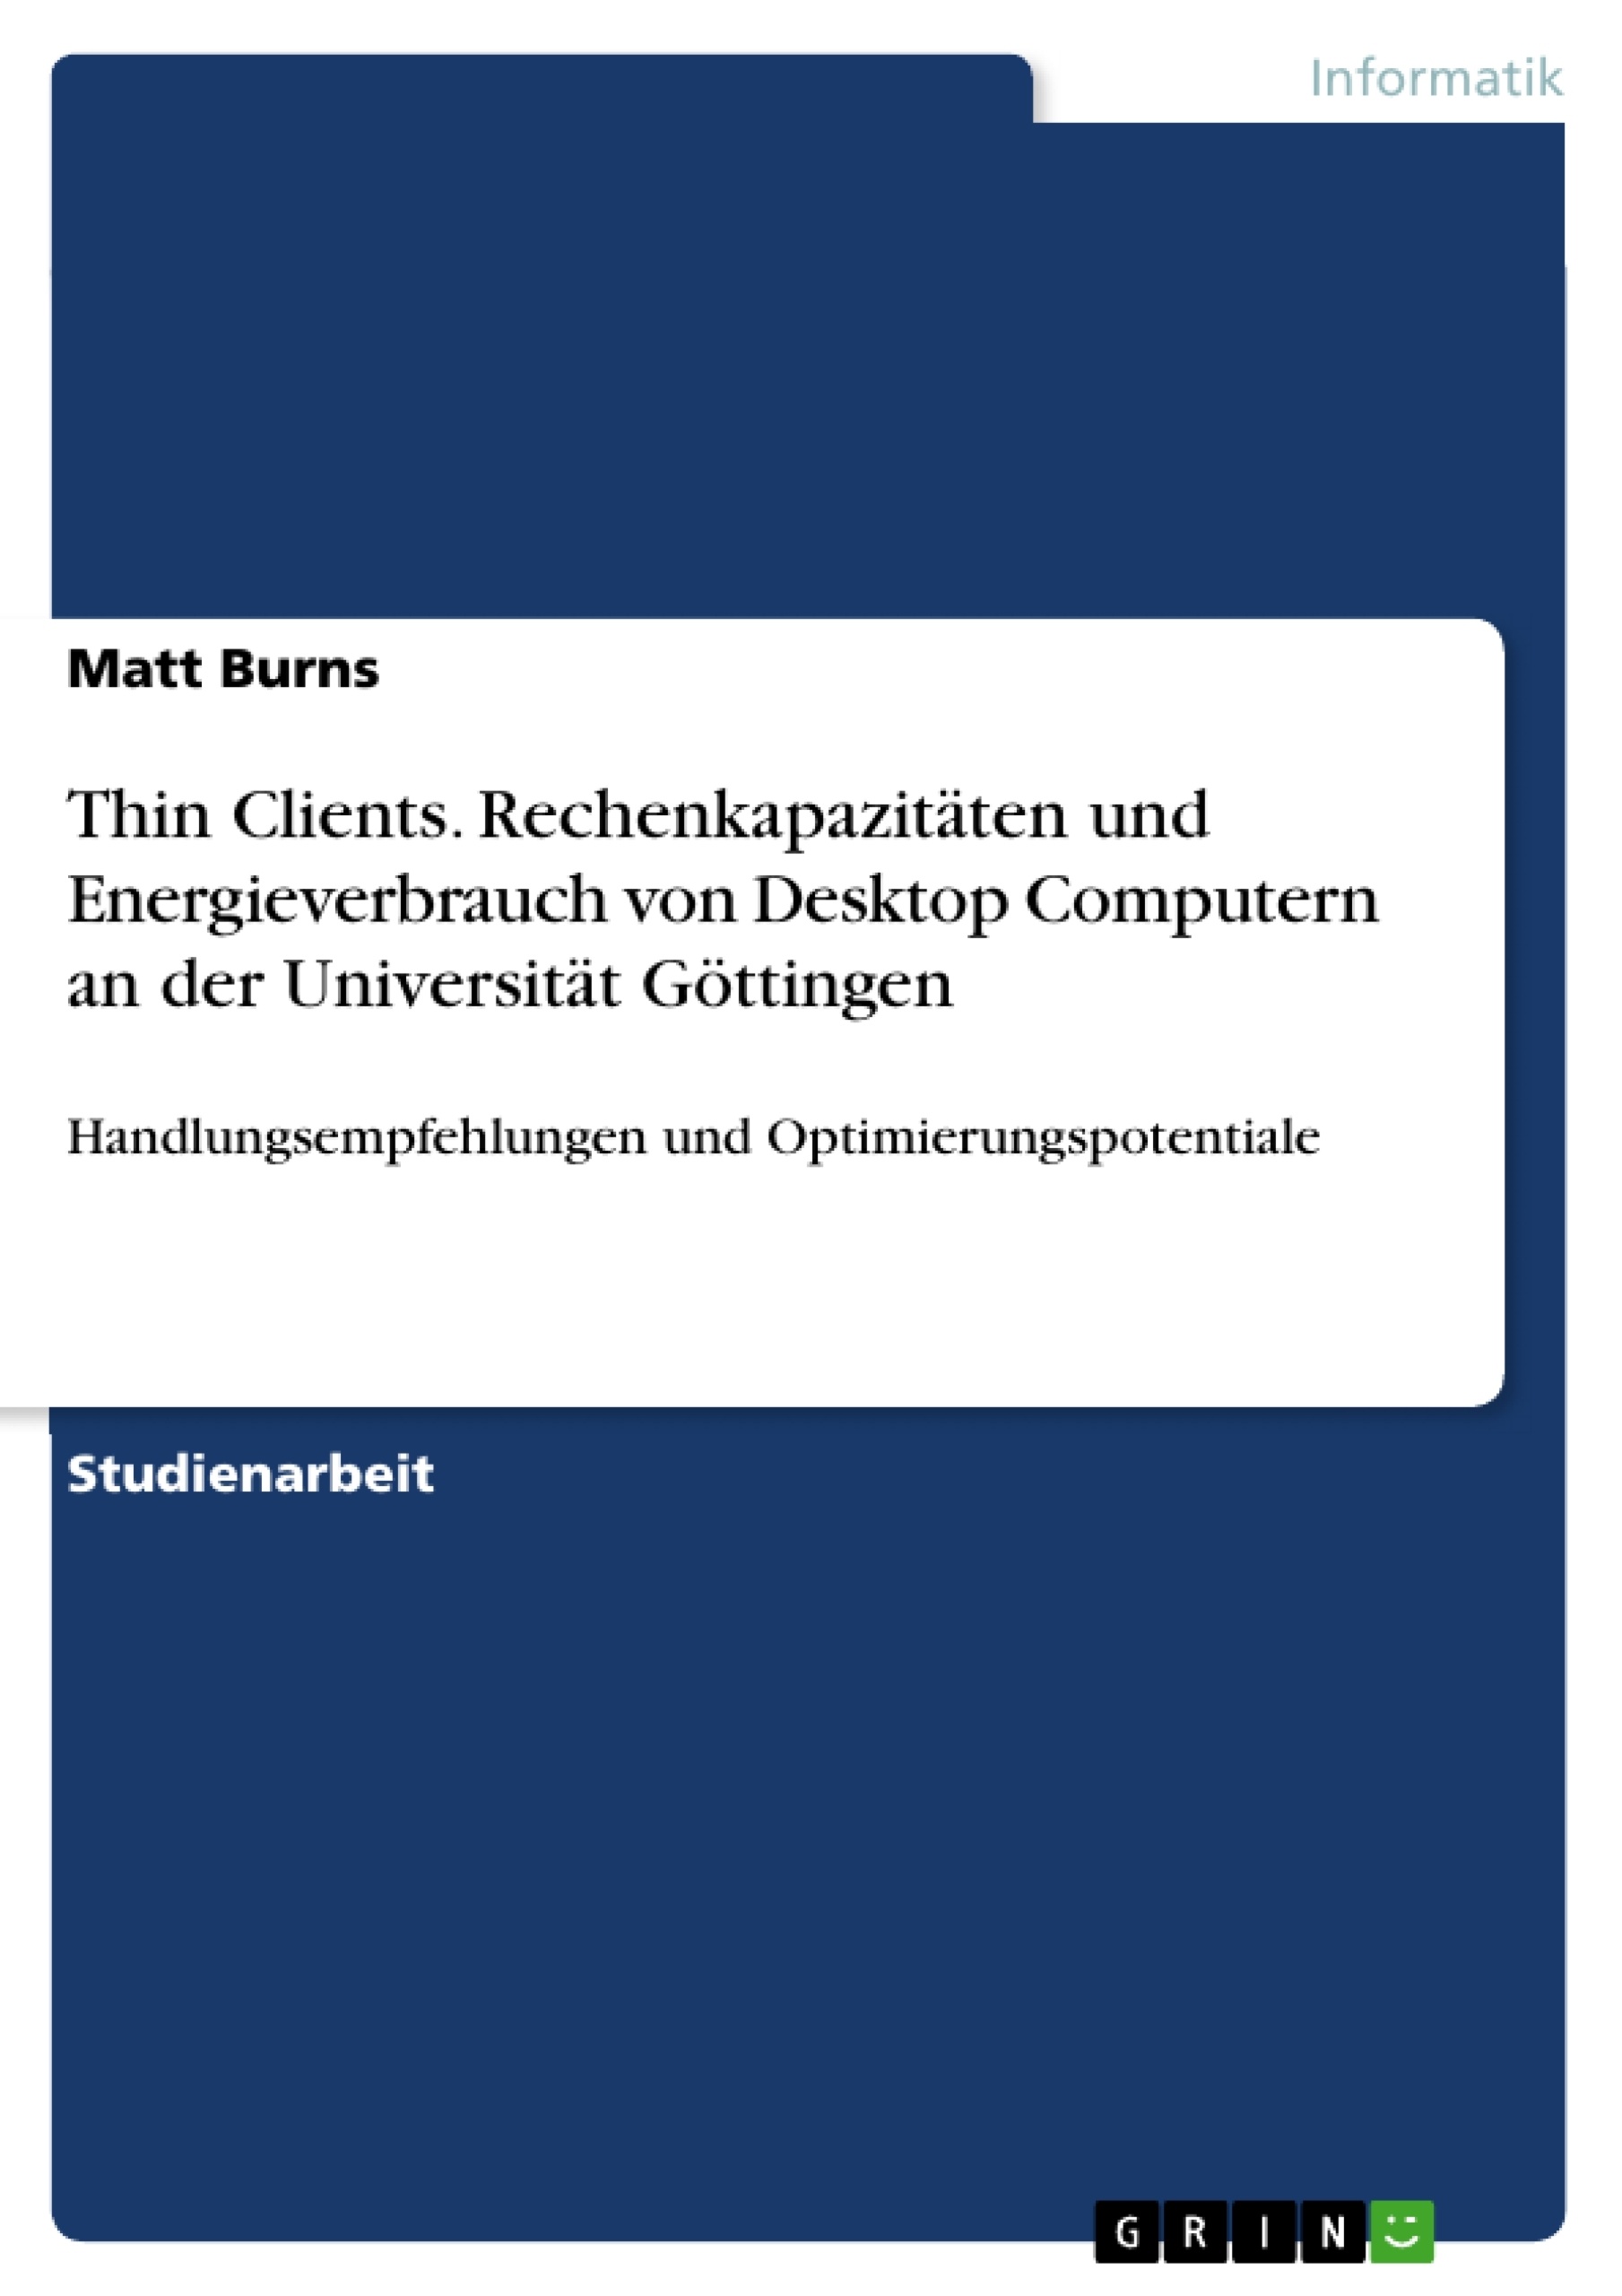 Title: Thin Clients. Rechenkapazitäten und Energieverbrauch von Desktop Computern an der Universität Göttingen